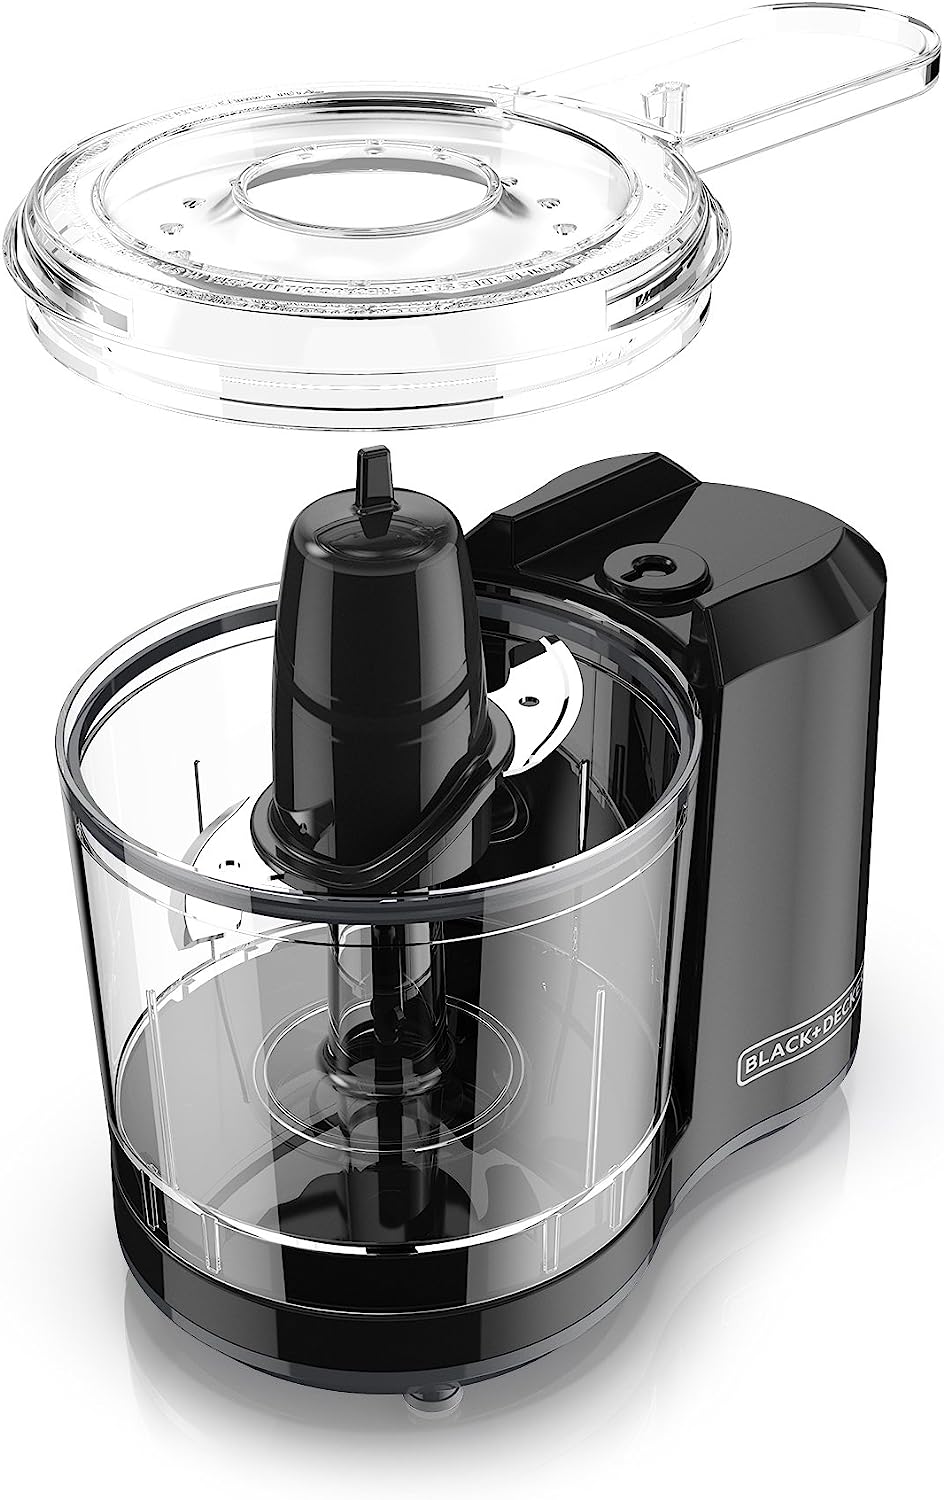 [3美國直購] Black+Decker HC150B 1.5杯 354ml 一鍵電動食物處理器 切菜機 Electric Food Chopper